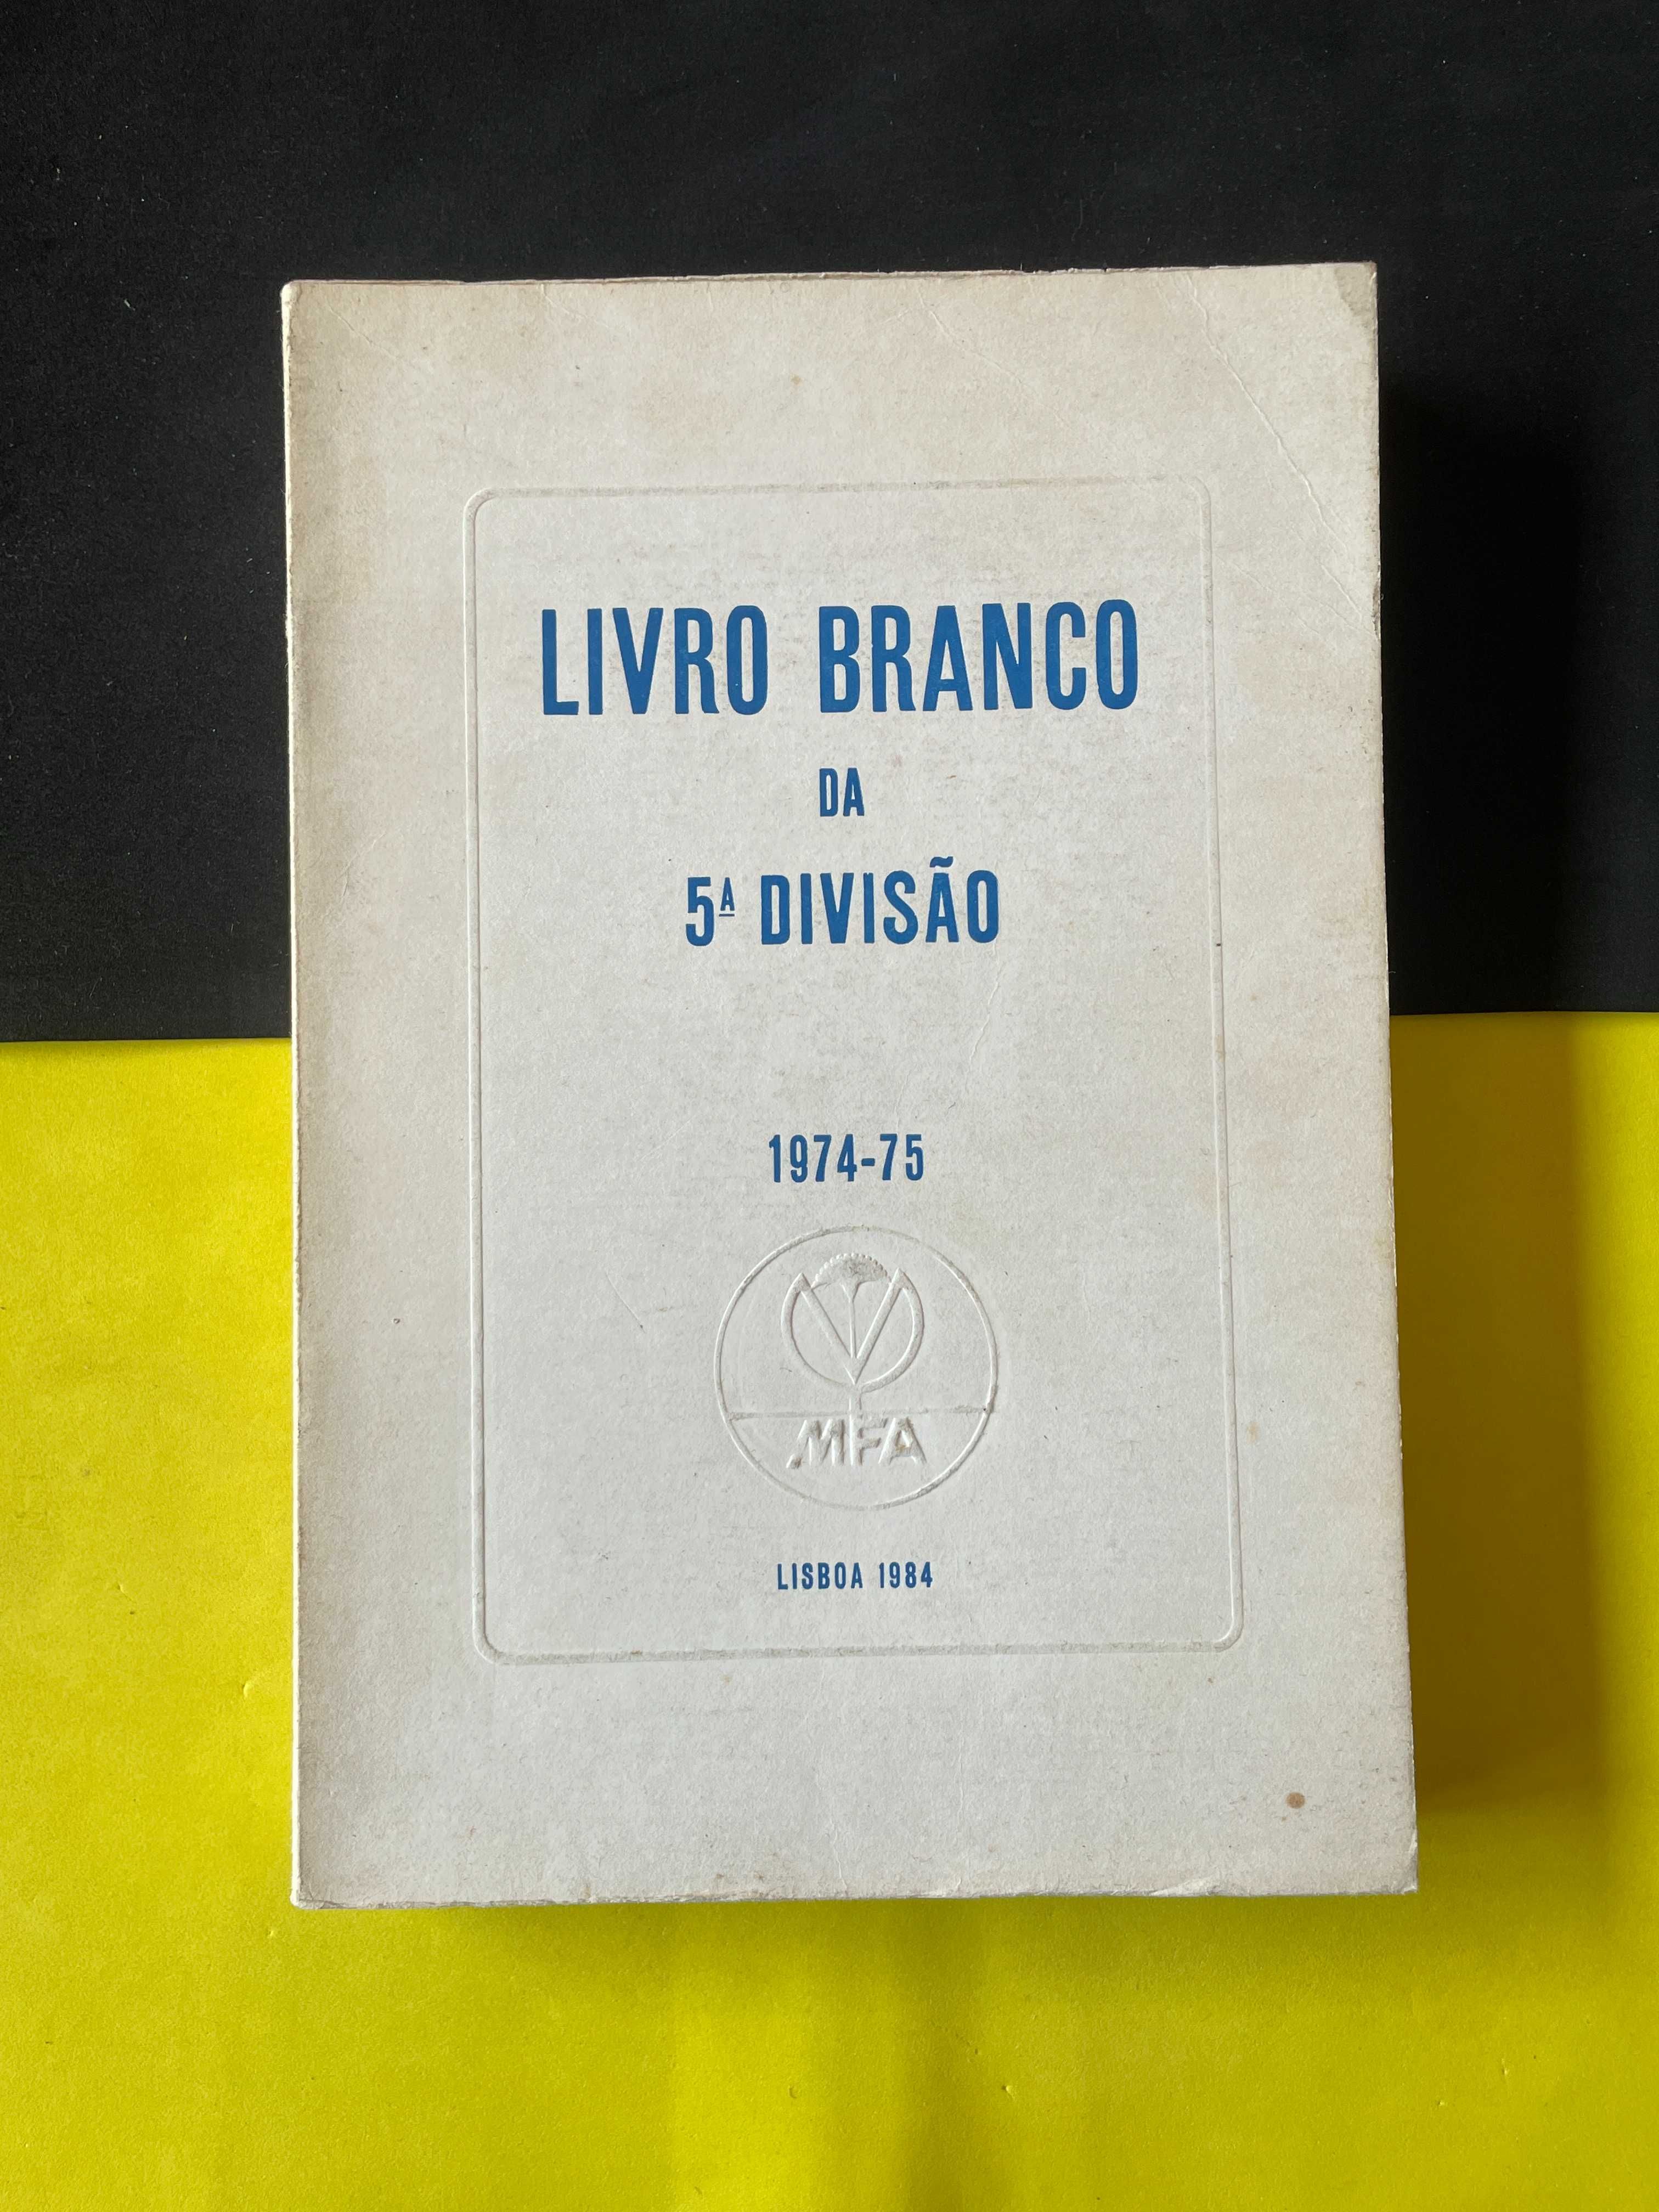 Lisboa 1984 - Livro Branco da 5ª divisão 1974-75